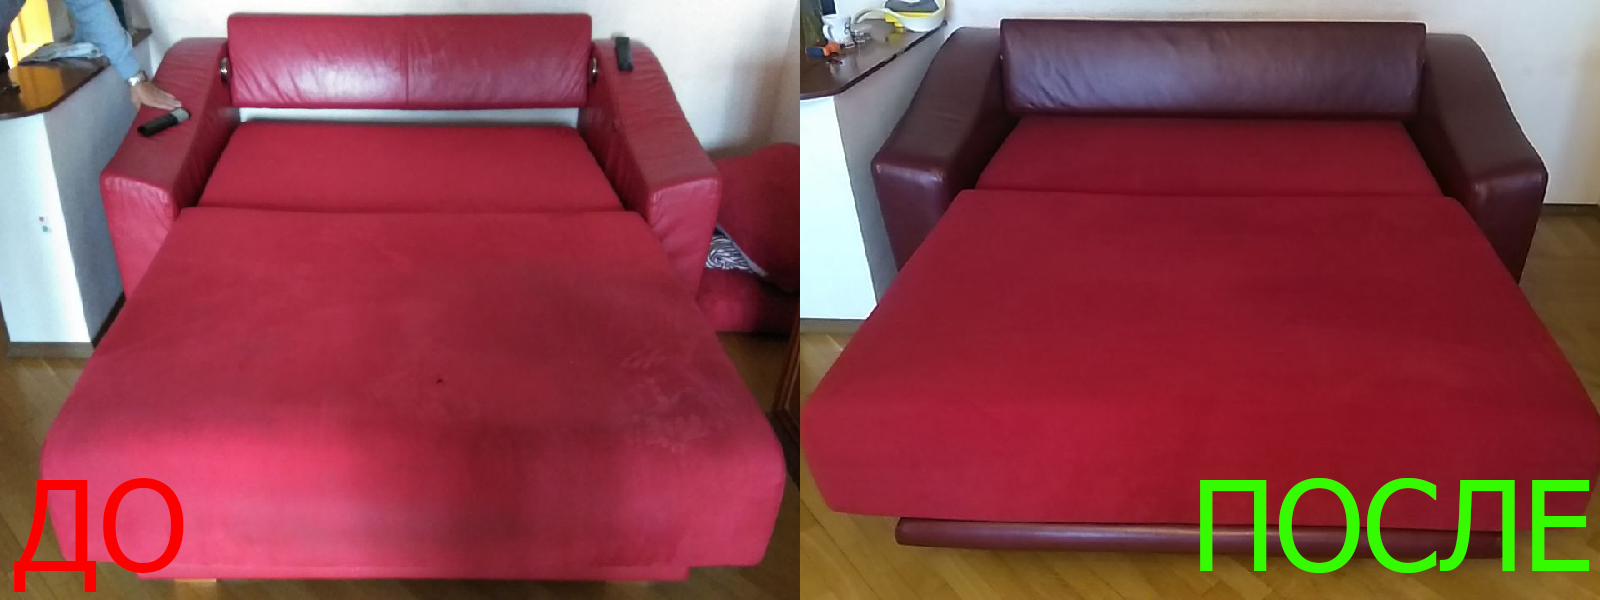 Ремонт механизма дивана в Казани разумные цены на услуги, опытные специалисты